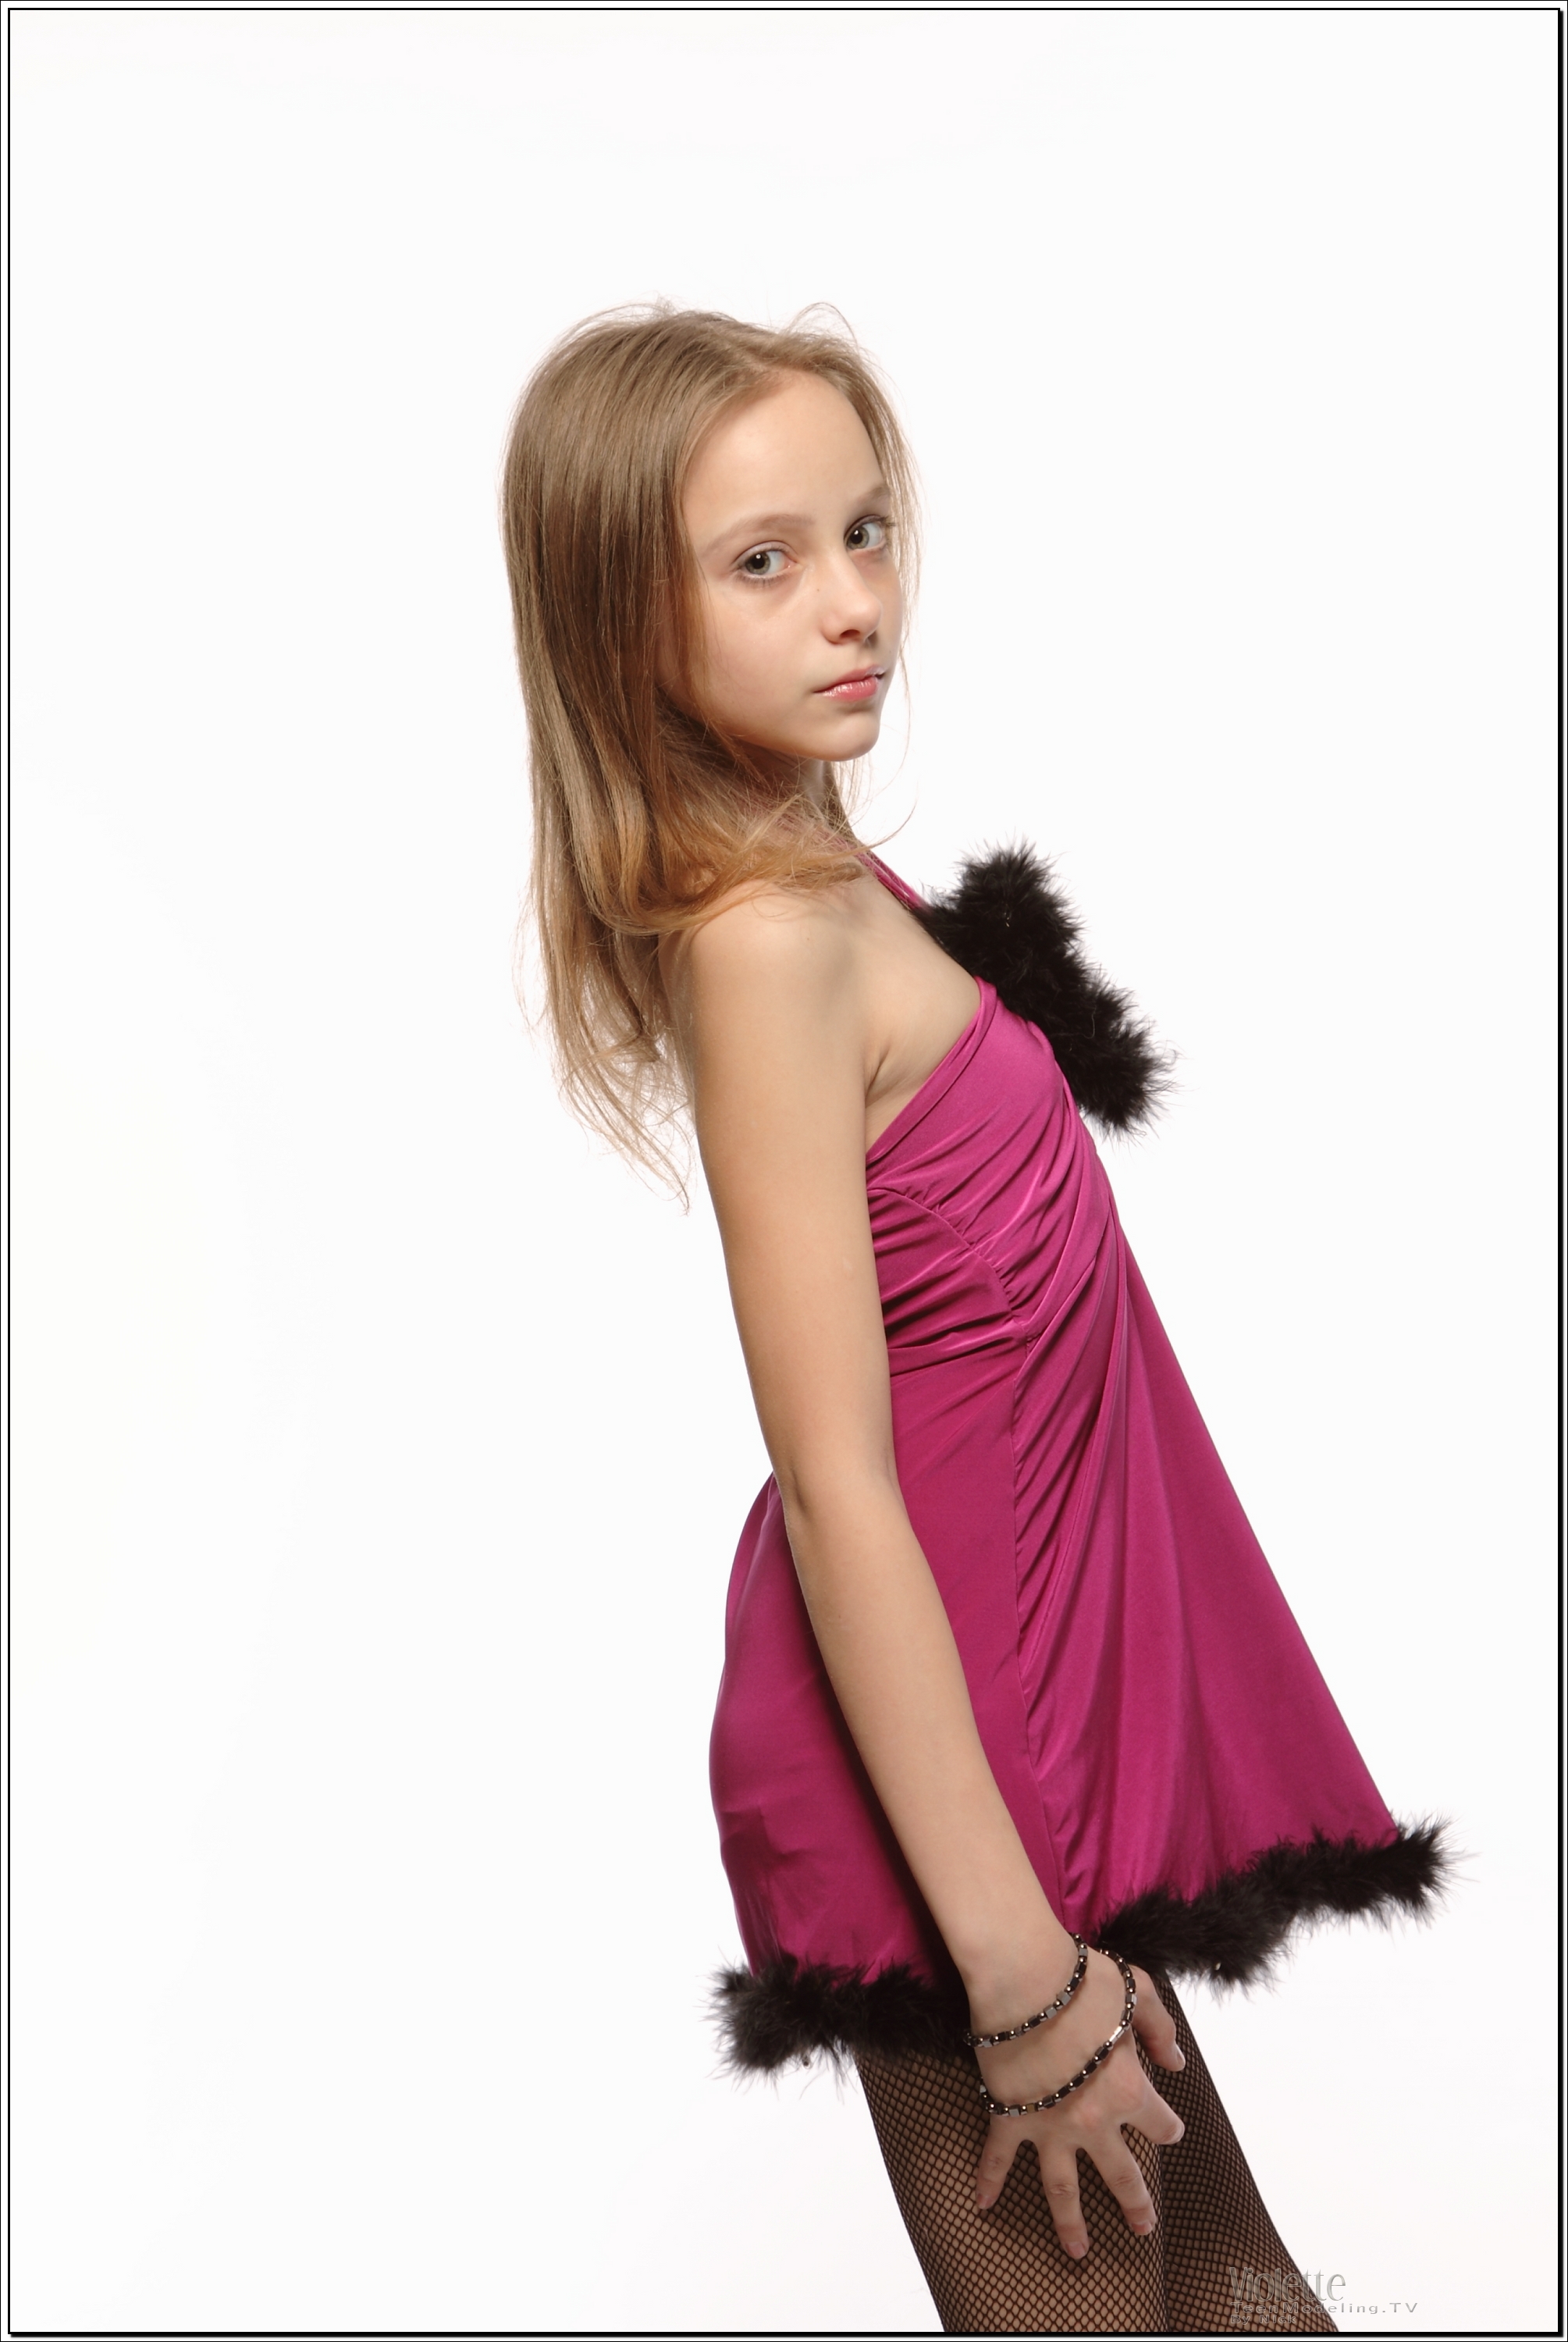 violette_model_pinkhalter_teenmodeling_tv_007.jpg